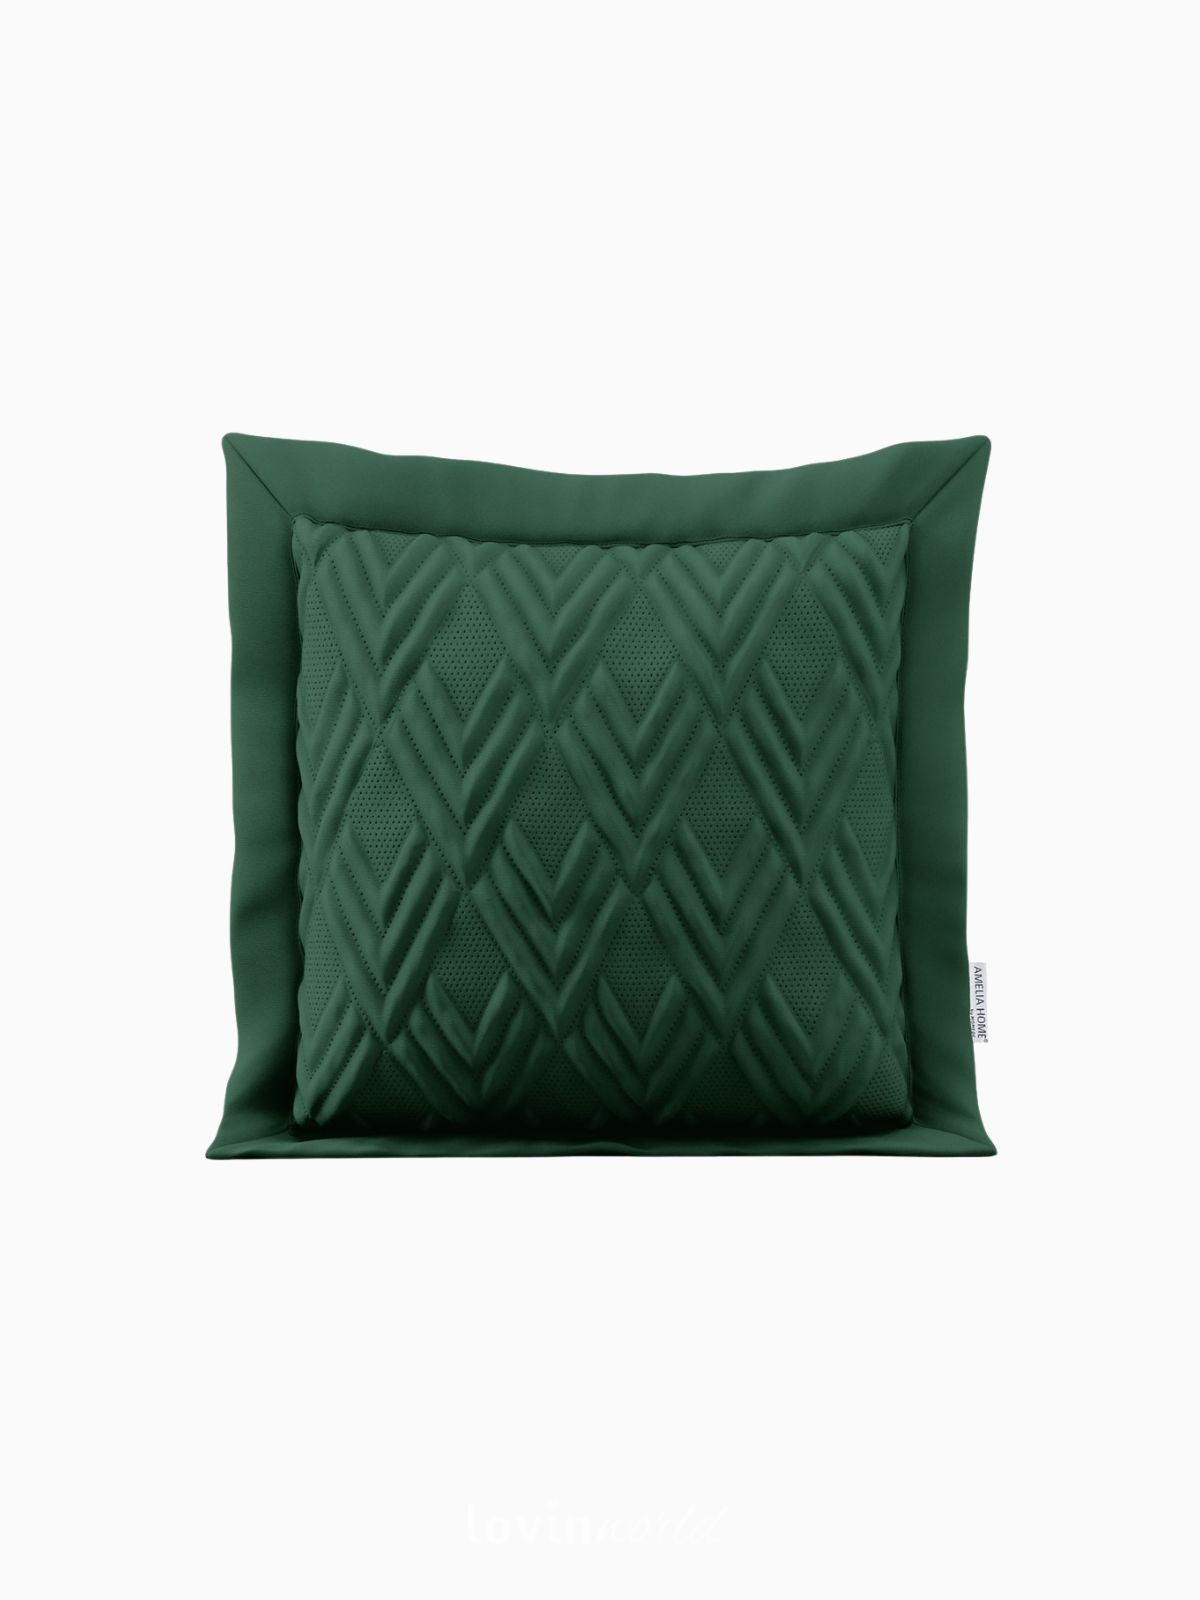 Cuscino decorativo Ophelia in colore verde 45x45 cm.-1